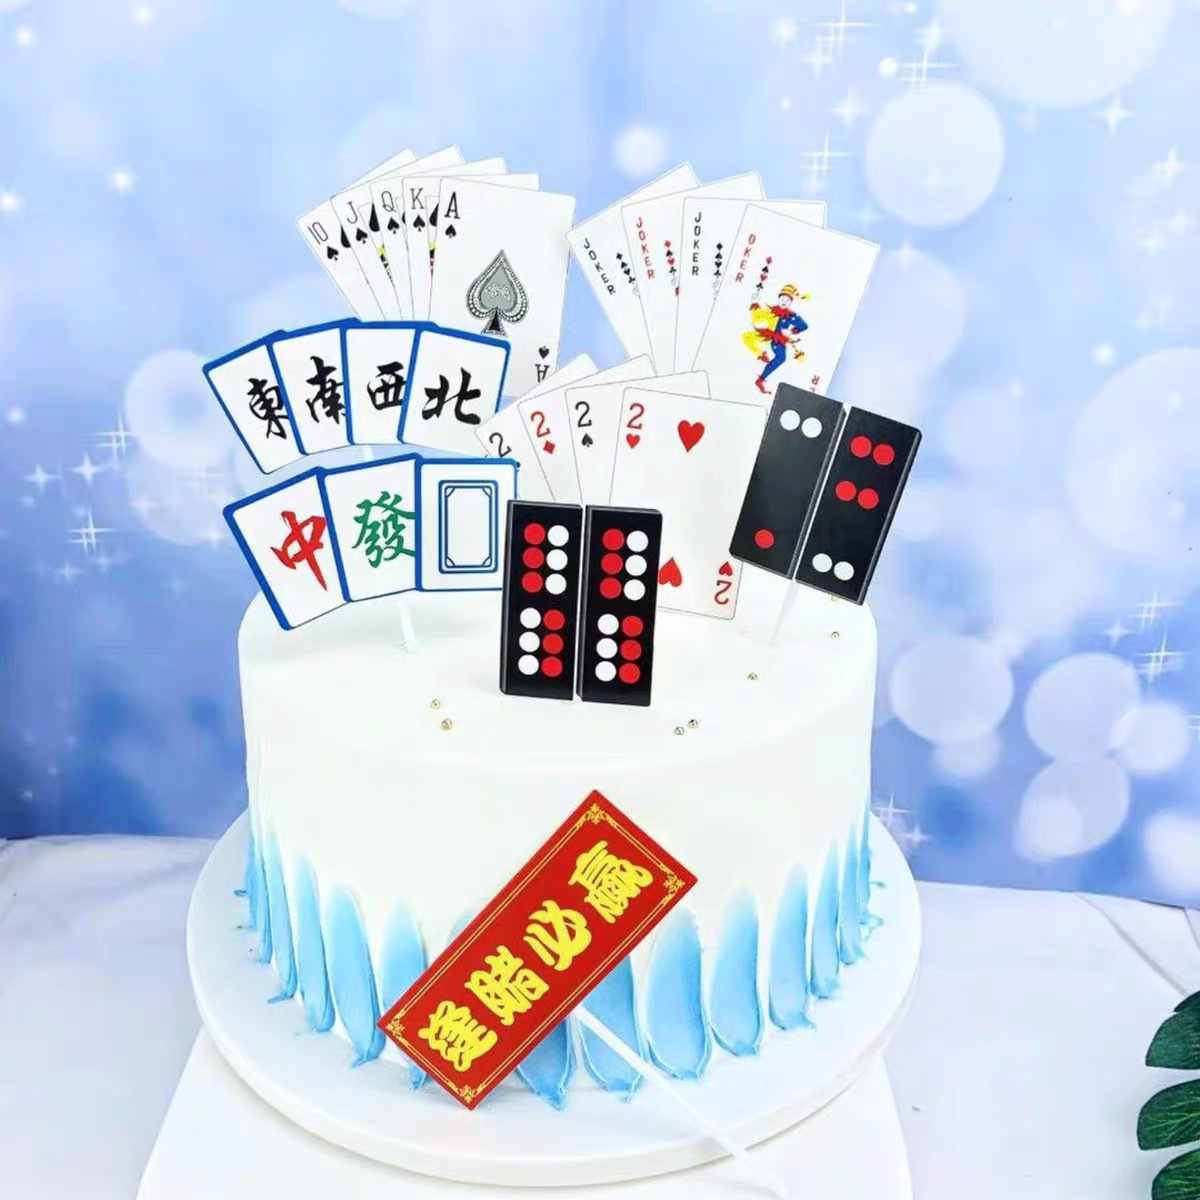 麻将发烧友扑克牌生日蛋糕装饰插牌麻将插卡扑克插卡蛋糕装饰插件